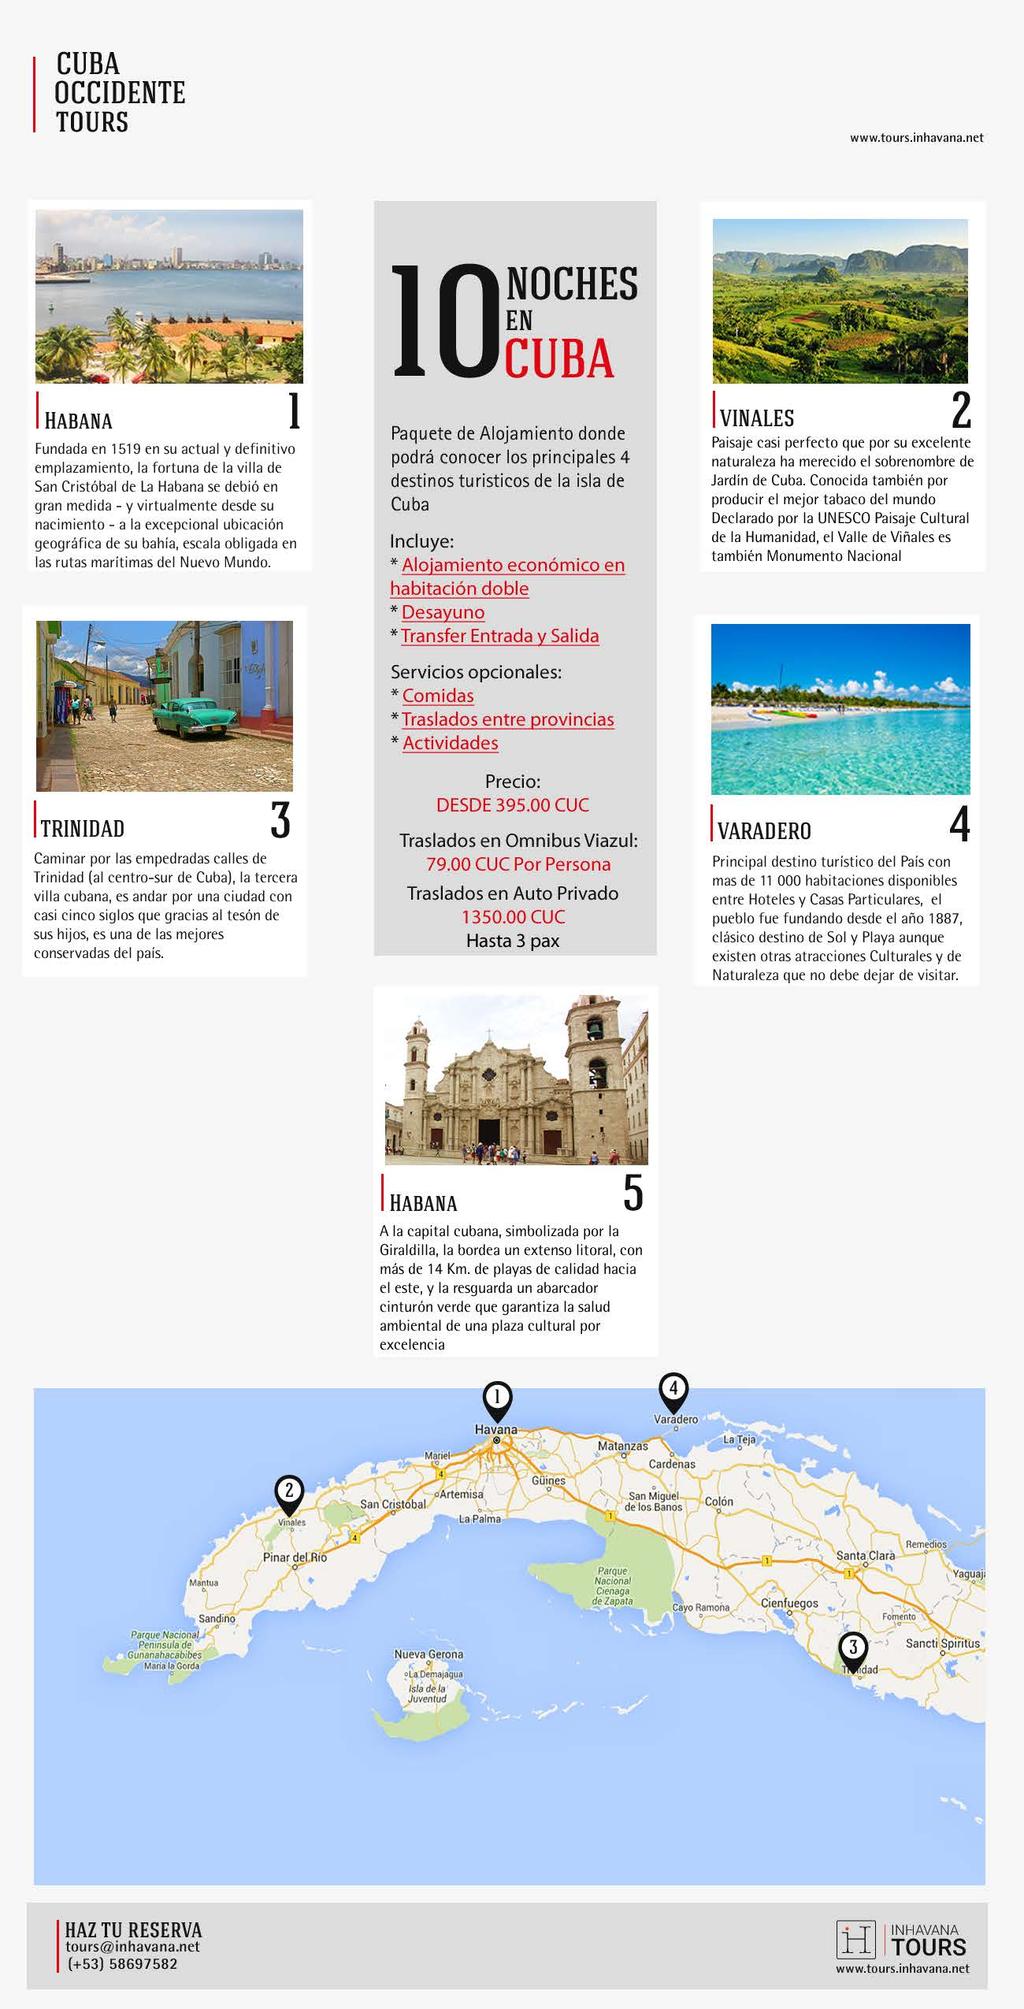 OCCIDENTE San Cristóbal de La se debió 0CUBA VINALES Paquete de Alojamito donde podrá conocer los principales destinos turisticos de la isla de Cuba * Alojamito económico * Desayuno * Traslados tre